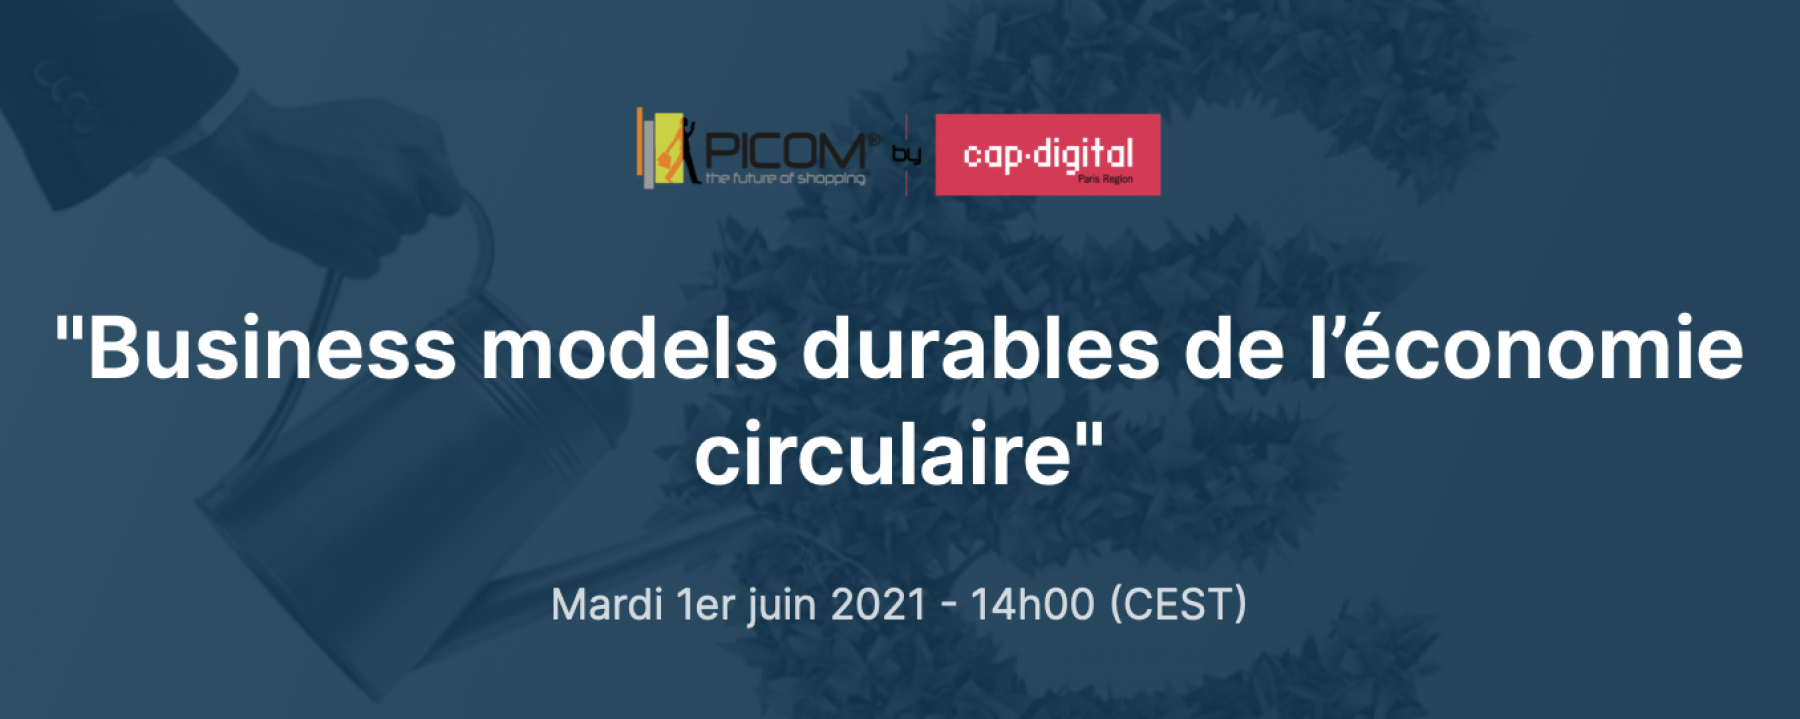 Business models durables de l’économie circulaire, organisé par PICOM le 1er juin 2021